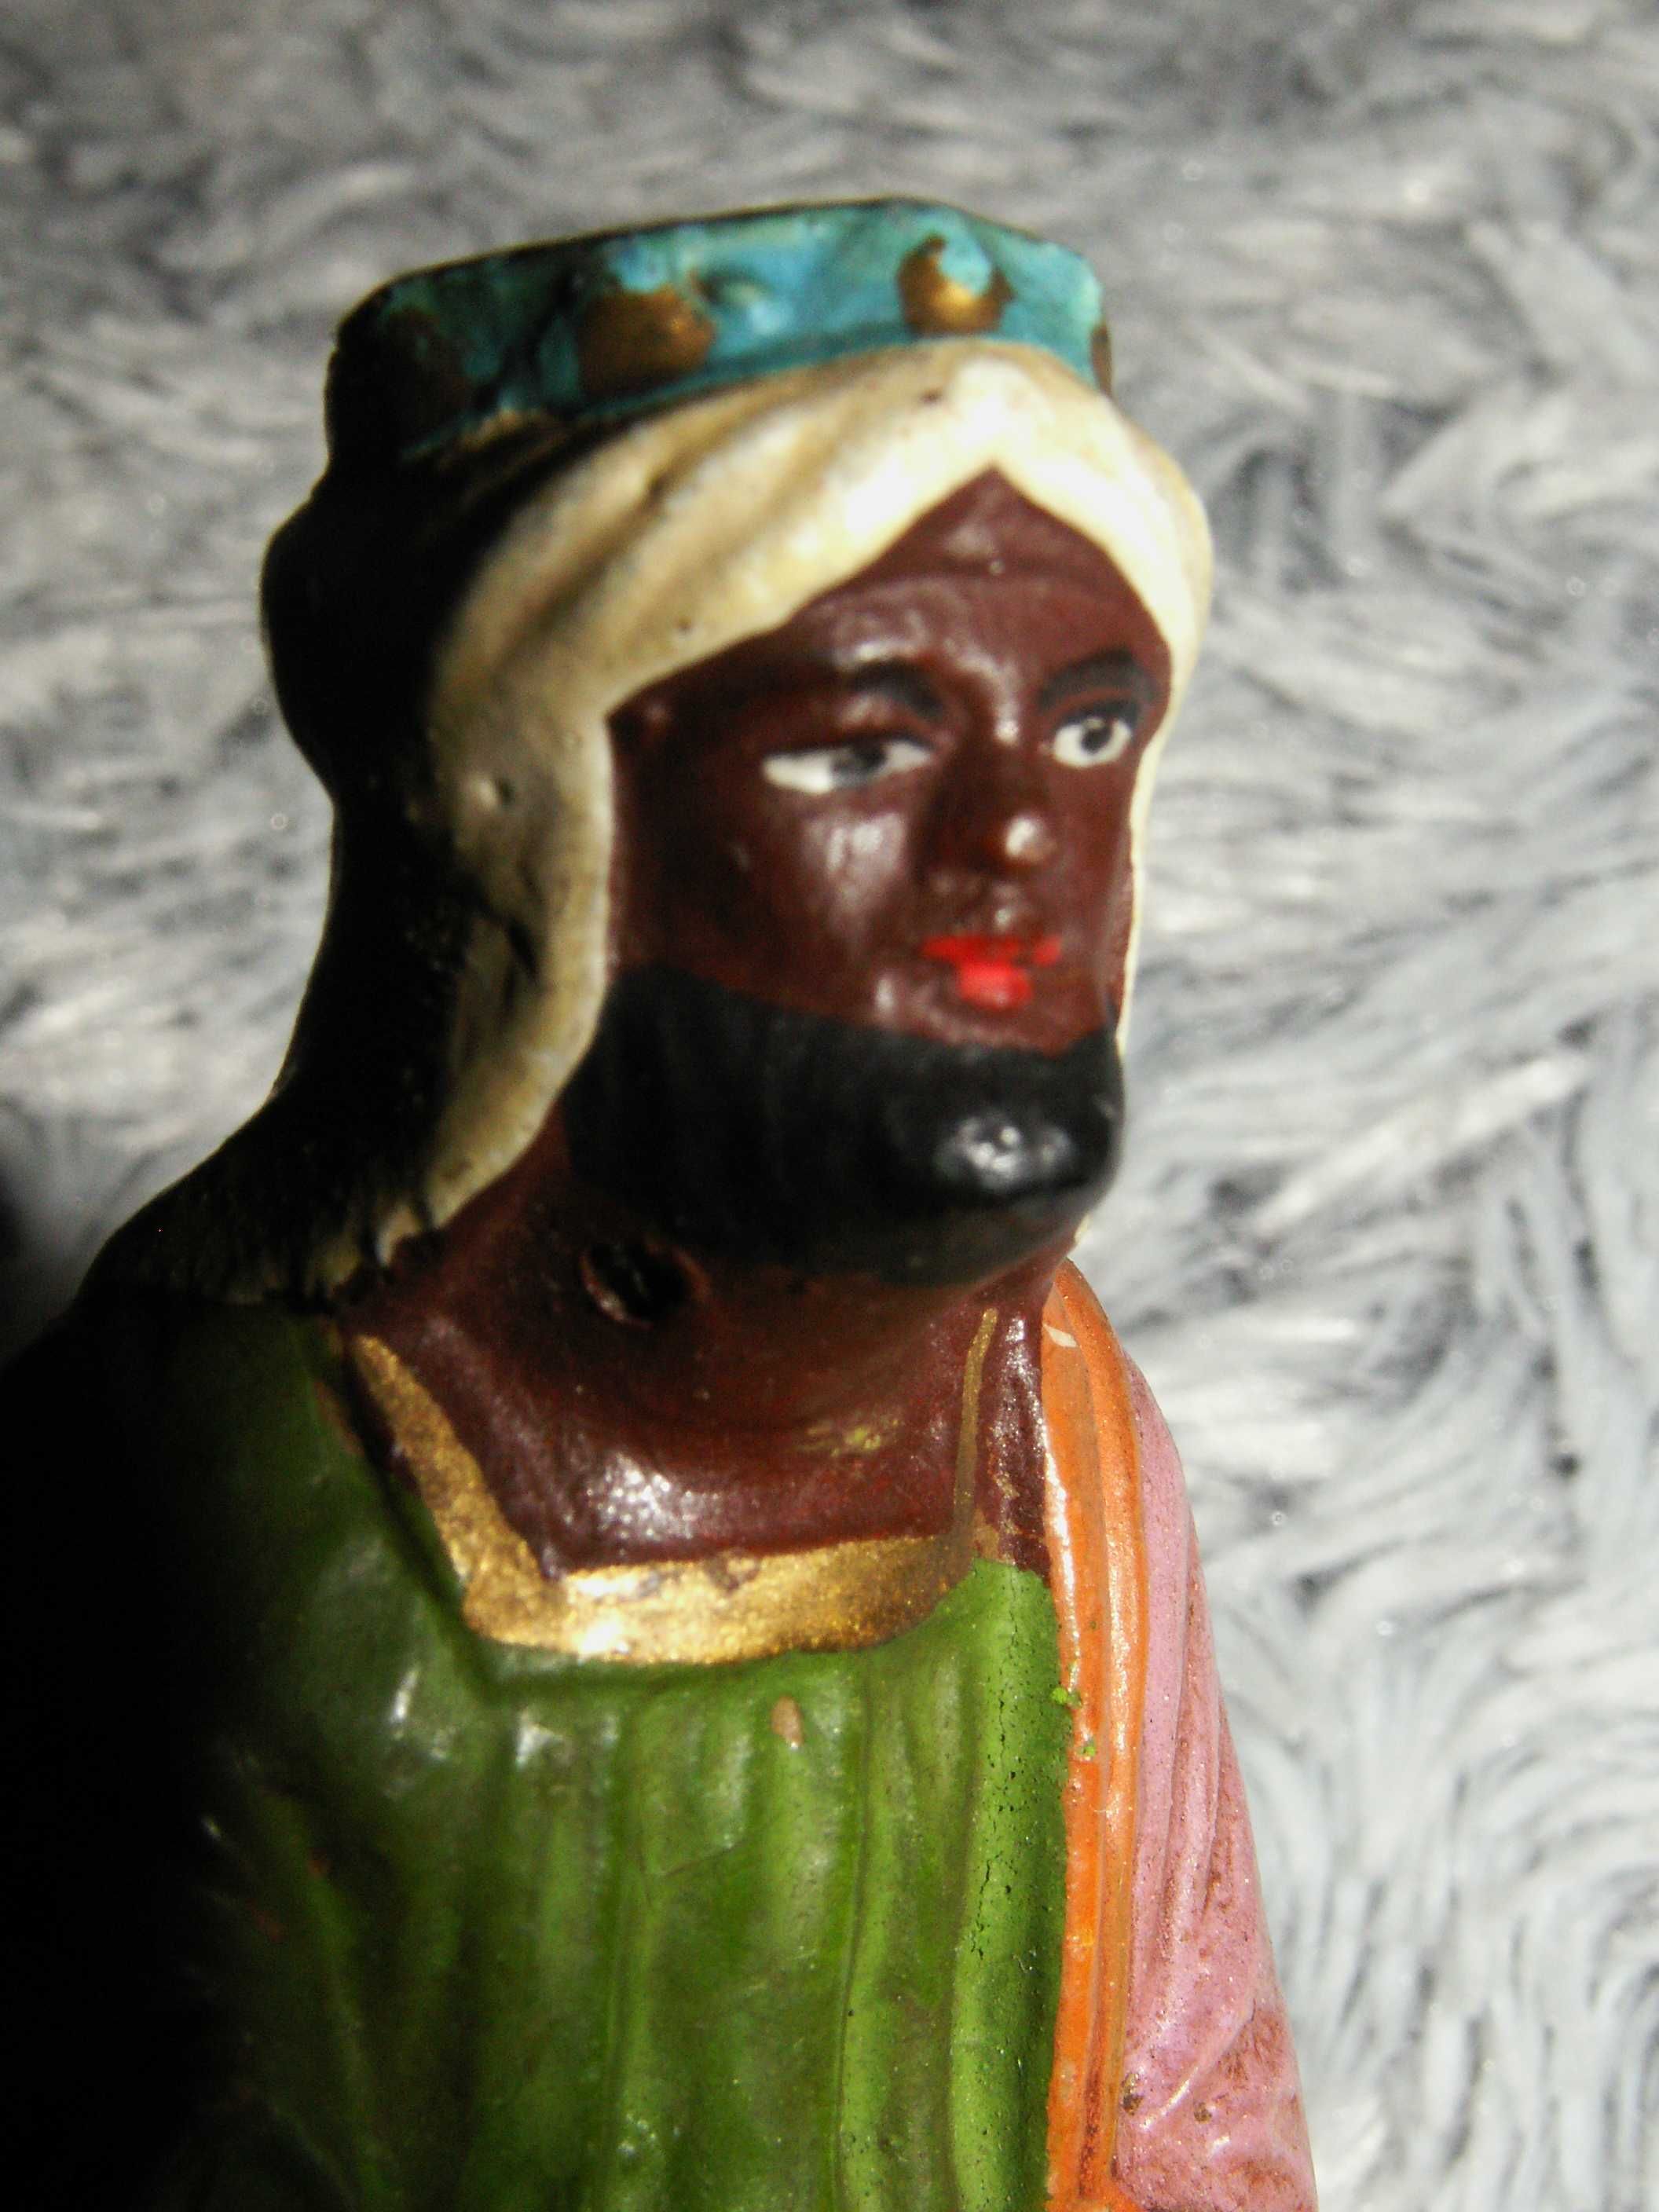 Stara Figurka do szopki bożonarodzeniowej KRÓL- uszkodzony z pap mache